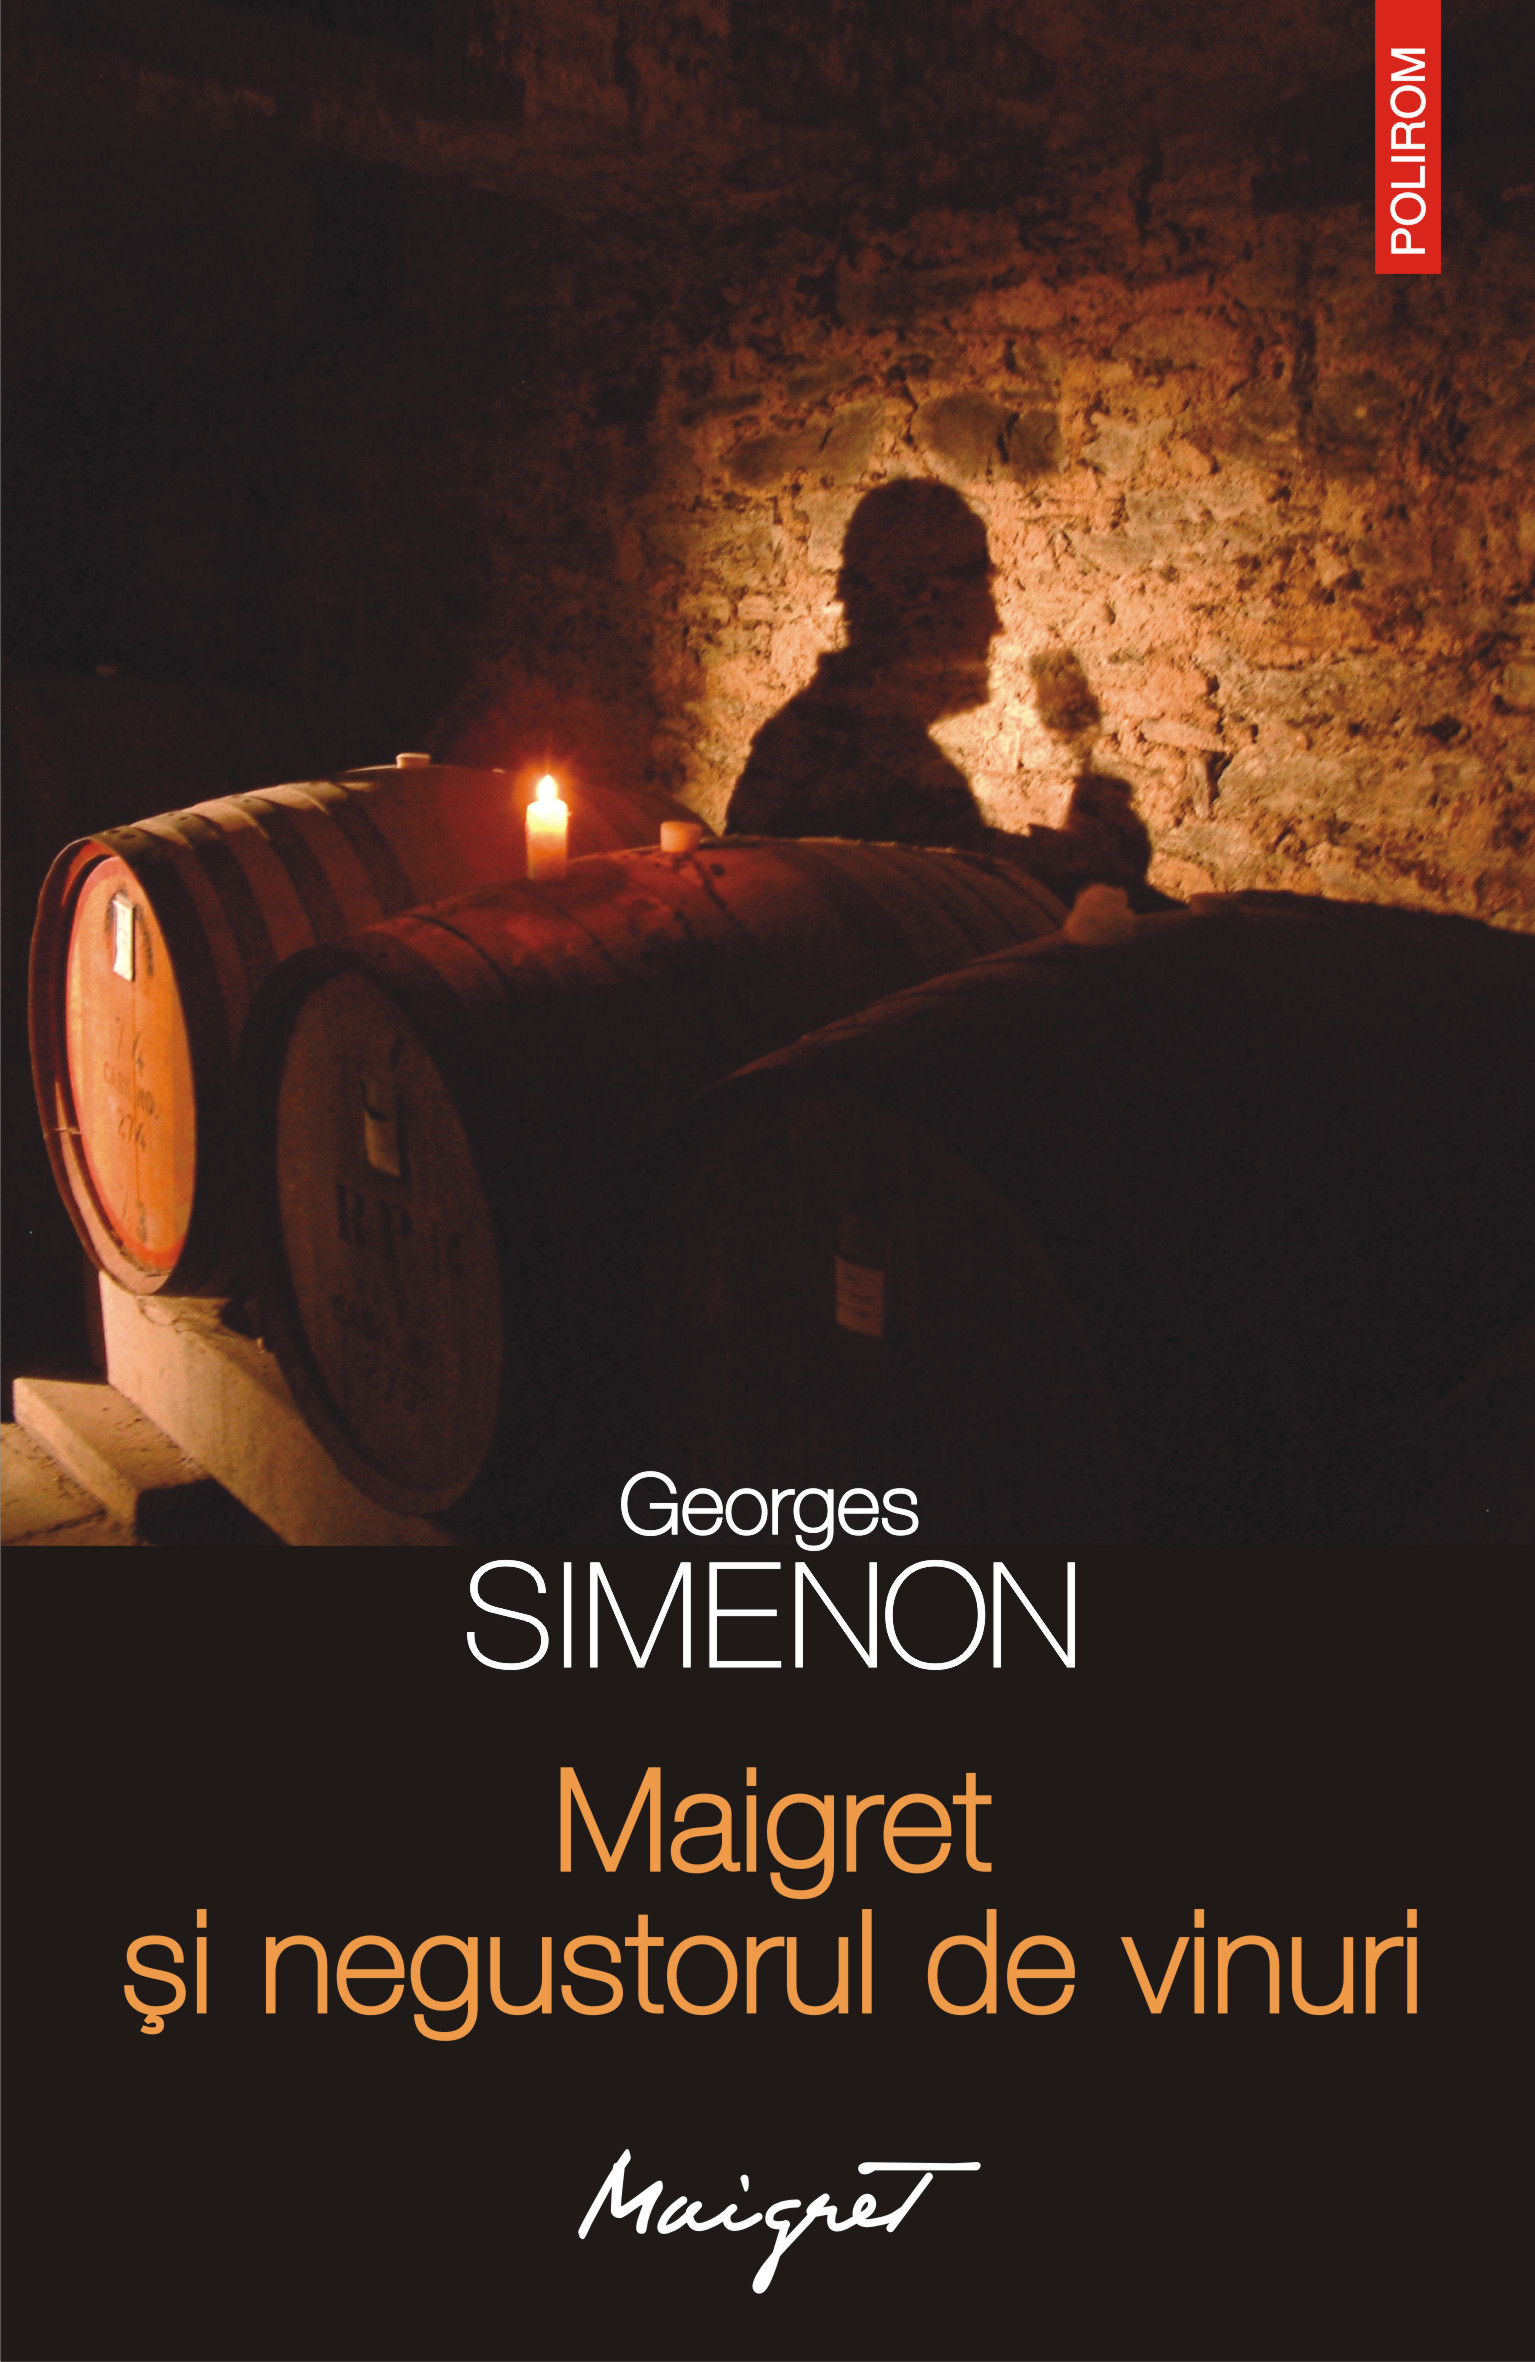 eBook Maigret si negustorul de vinuri - Georges Simenon